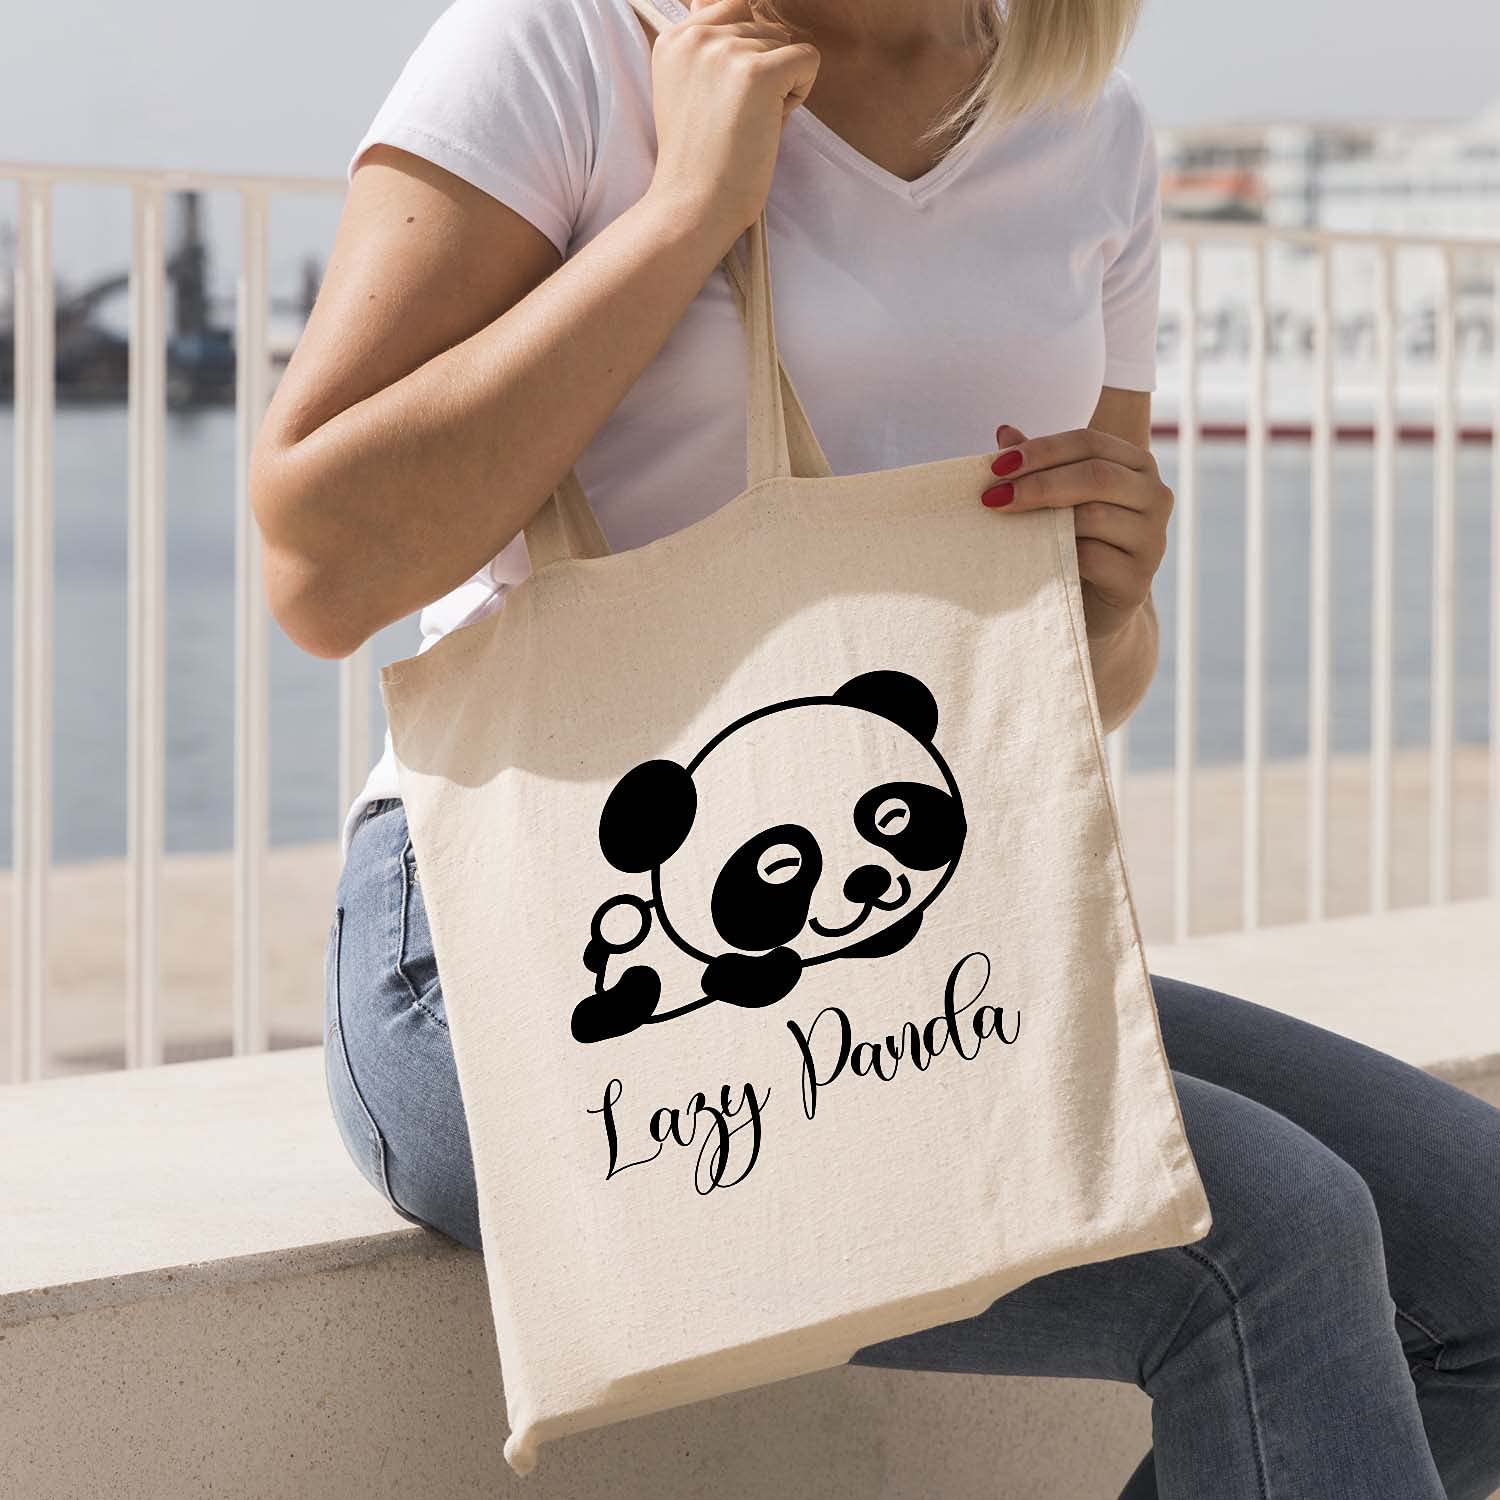 Vegan Bags | Sustainable Vegan Leather Bags - Luna Bags